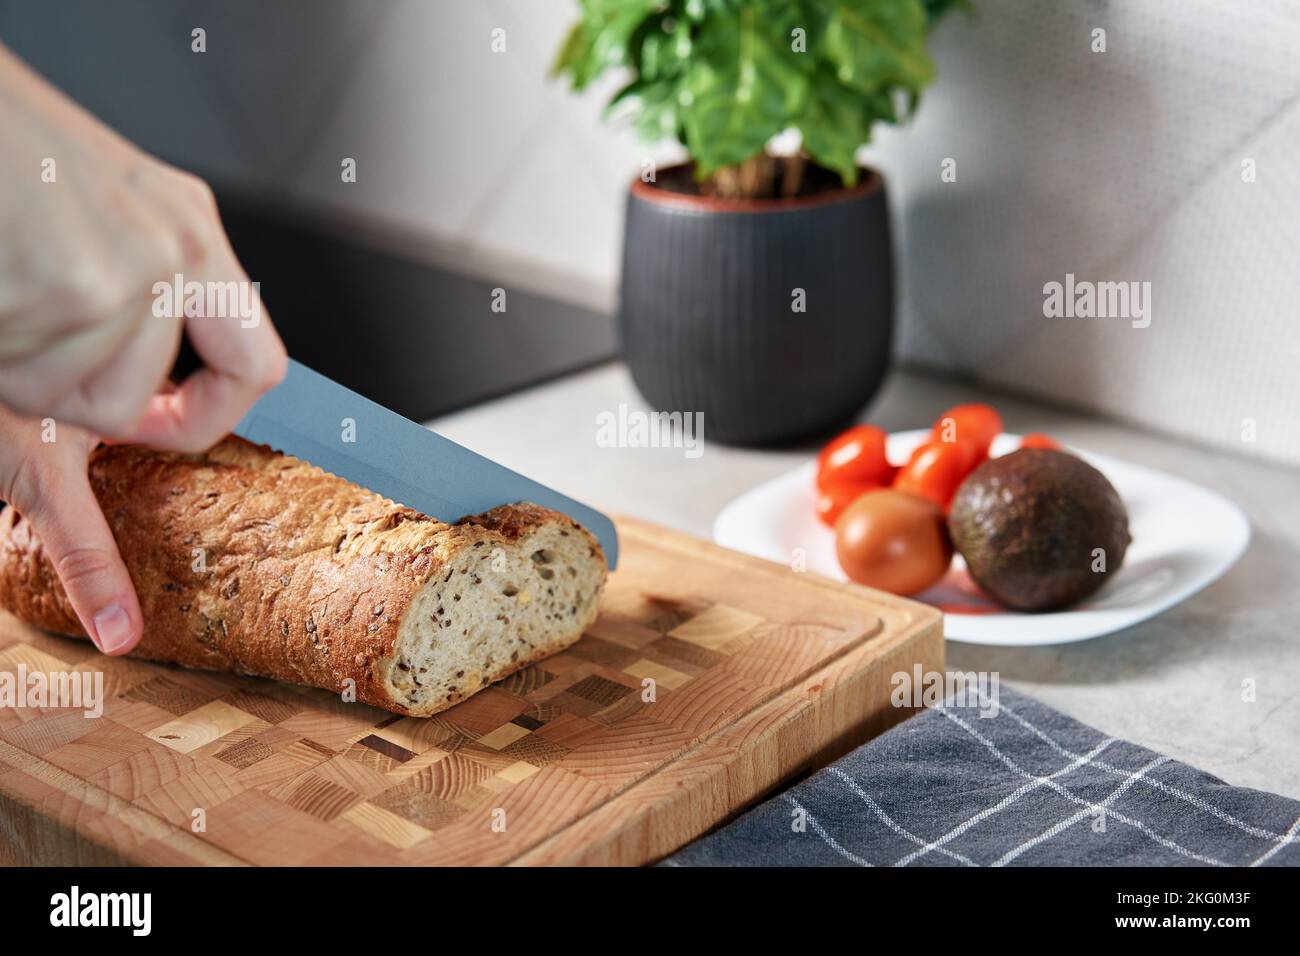 Femme coupant du pain de grain entier avec un grand couteau sur la planche à découper. Tranchez du pain frais et croustillant aux mains dans la cuisine Banque D'Images